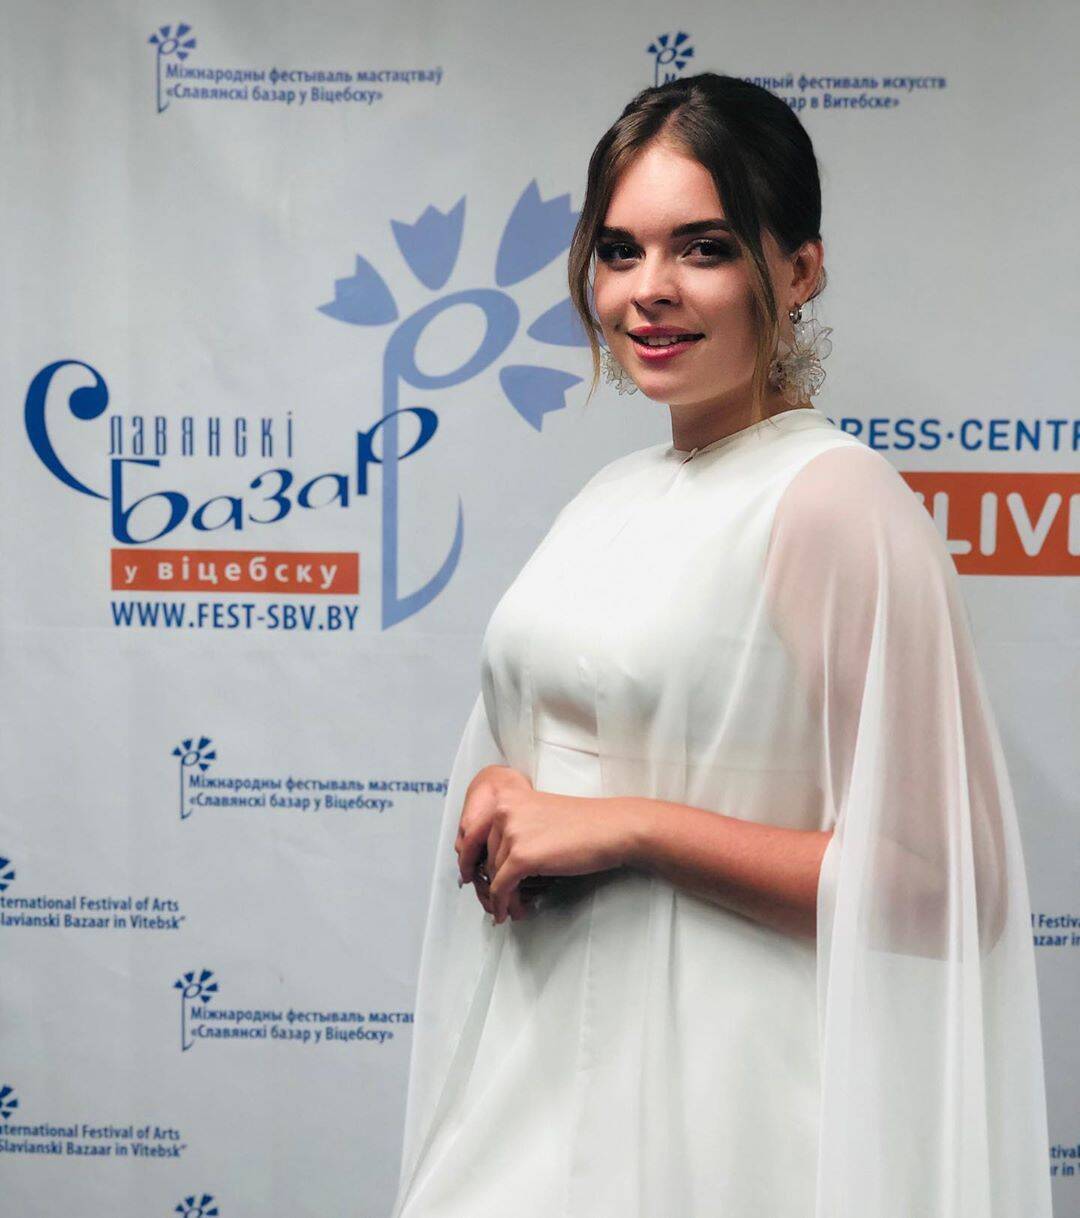 Элина Иващенко победила на конкурсе "Славянский базар" (Instagram Элины Иващенко)